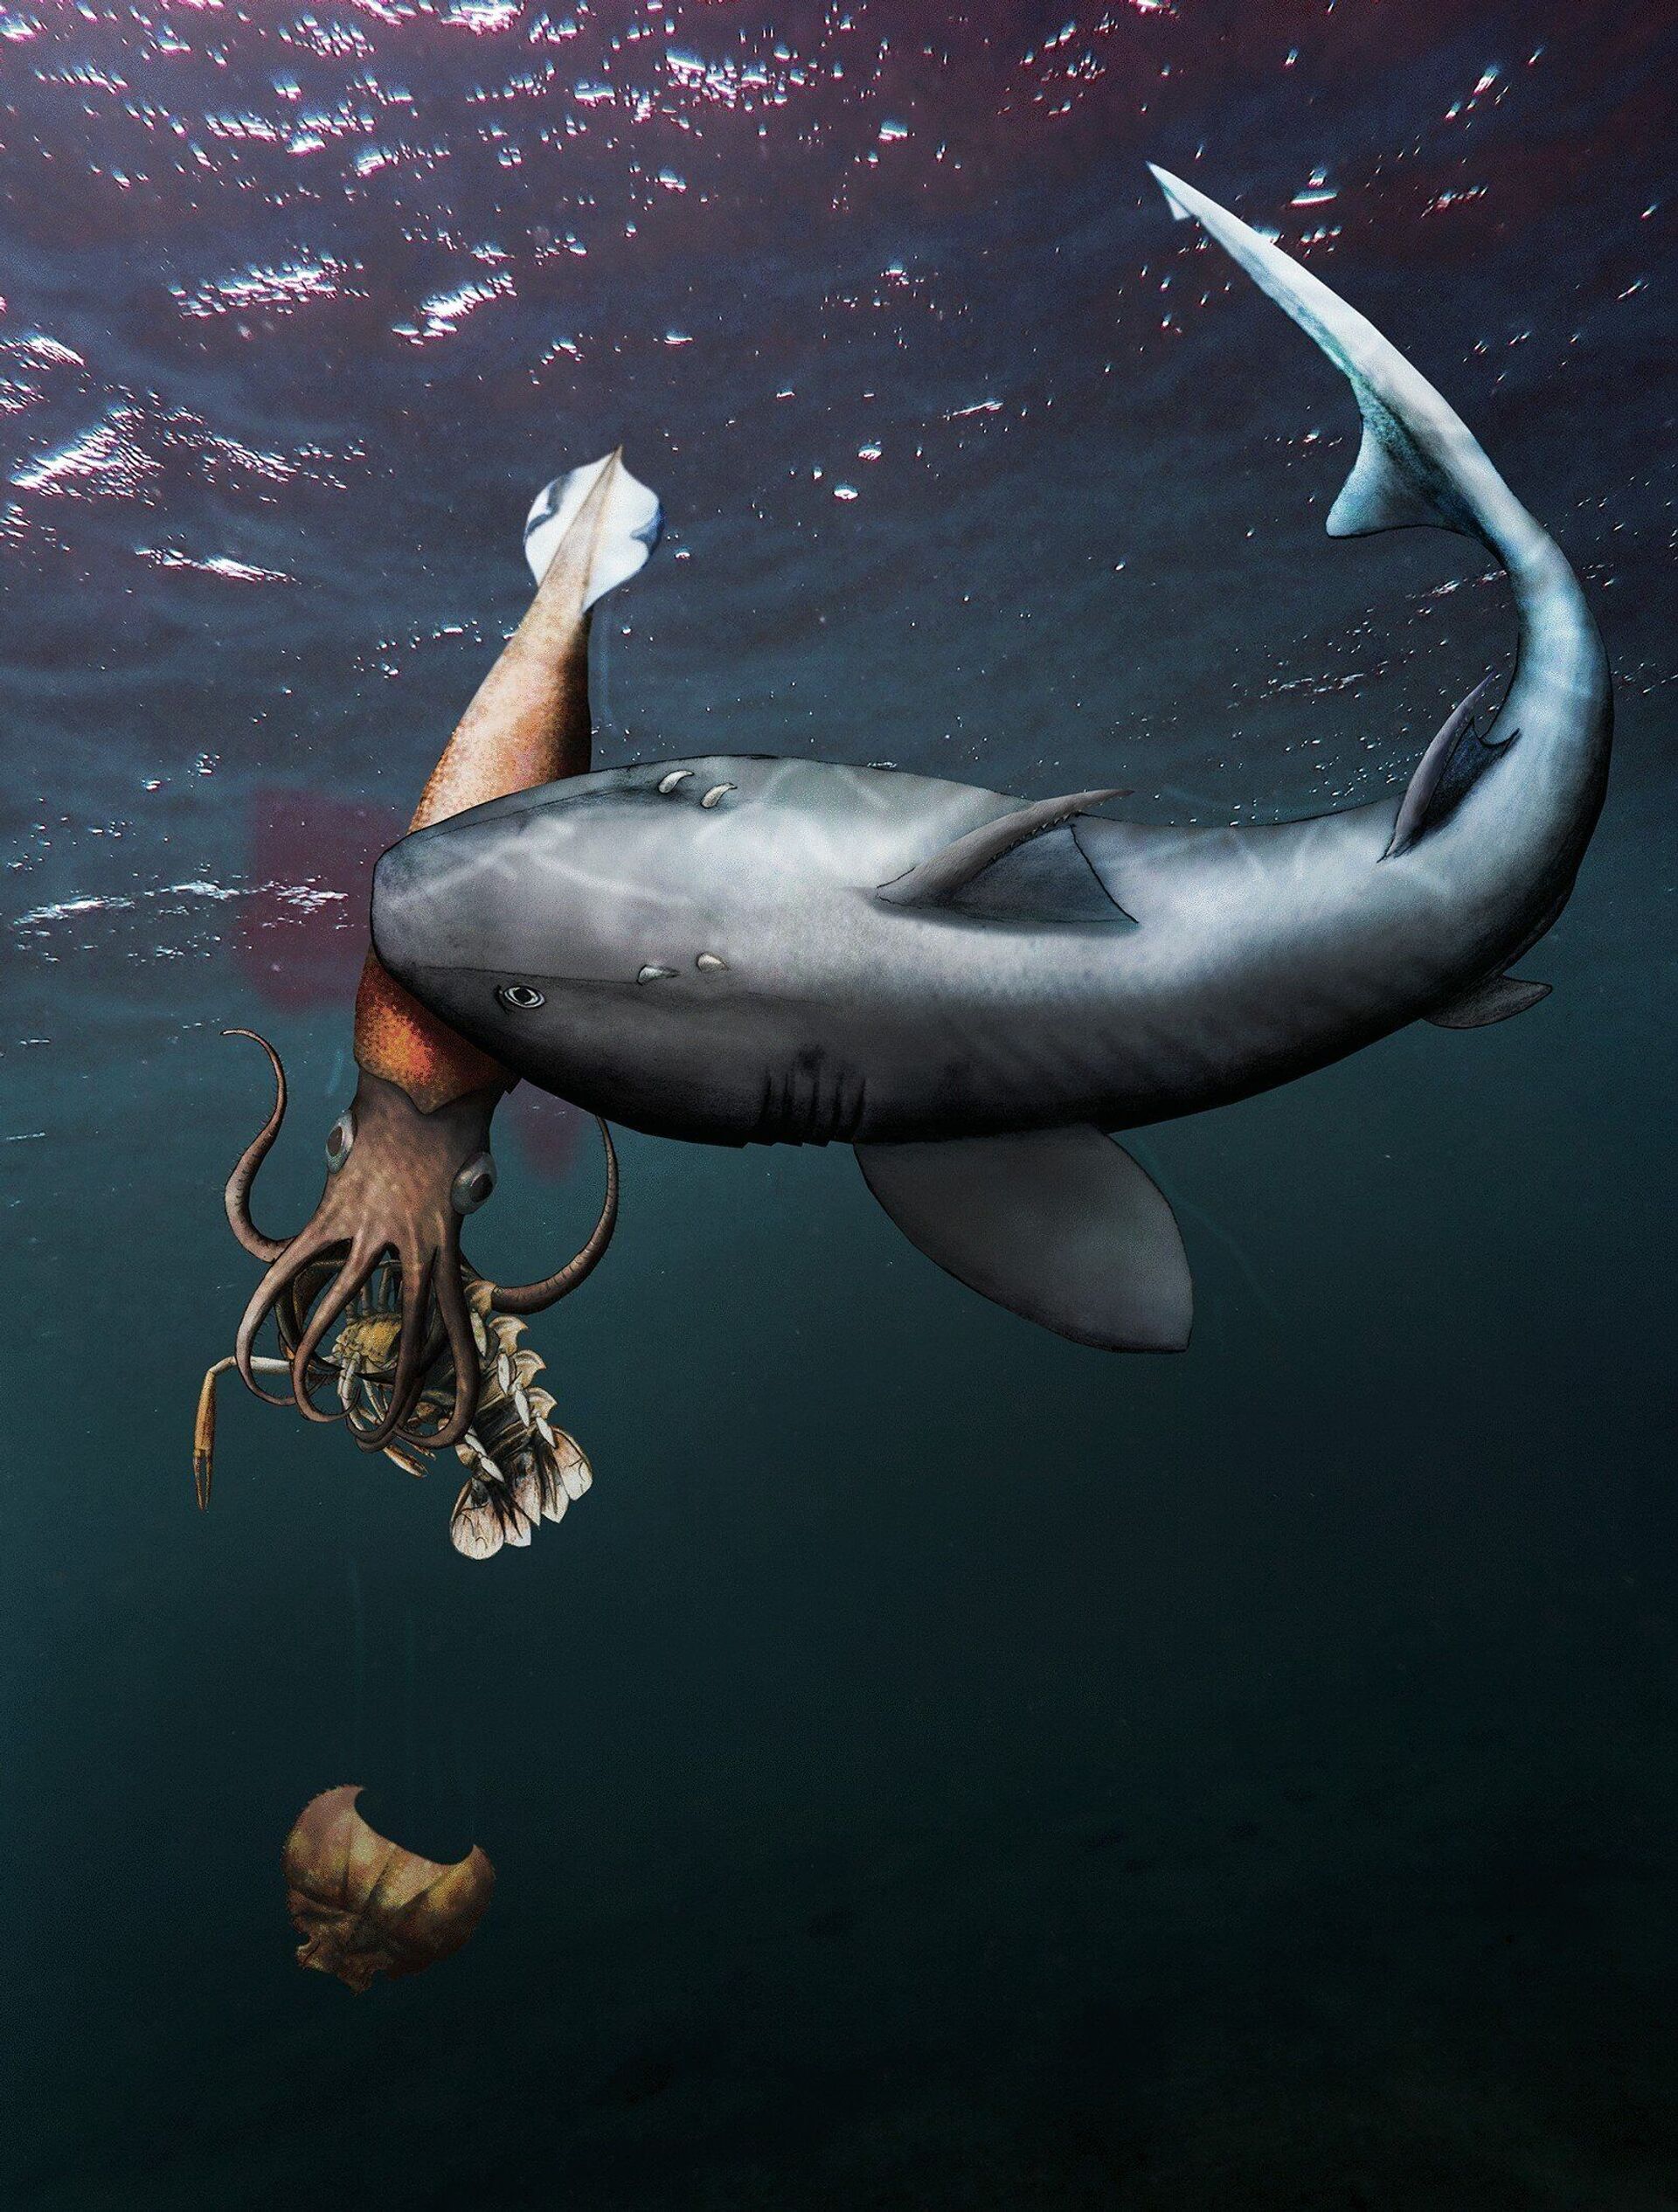 Fóssil capta lula ancestral comendo crustáceo enquanto era comida por tubarão pré-histórico (FOTOS) - Sputnik Brasil, 1920, 11.05.2021